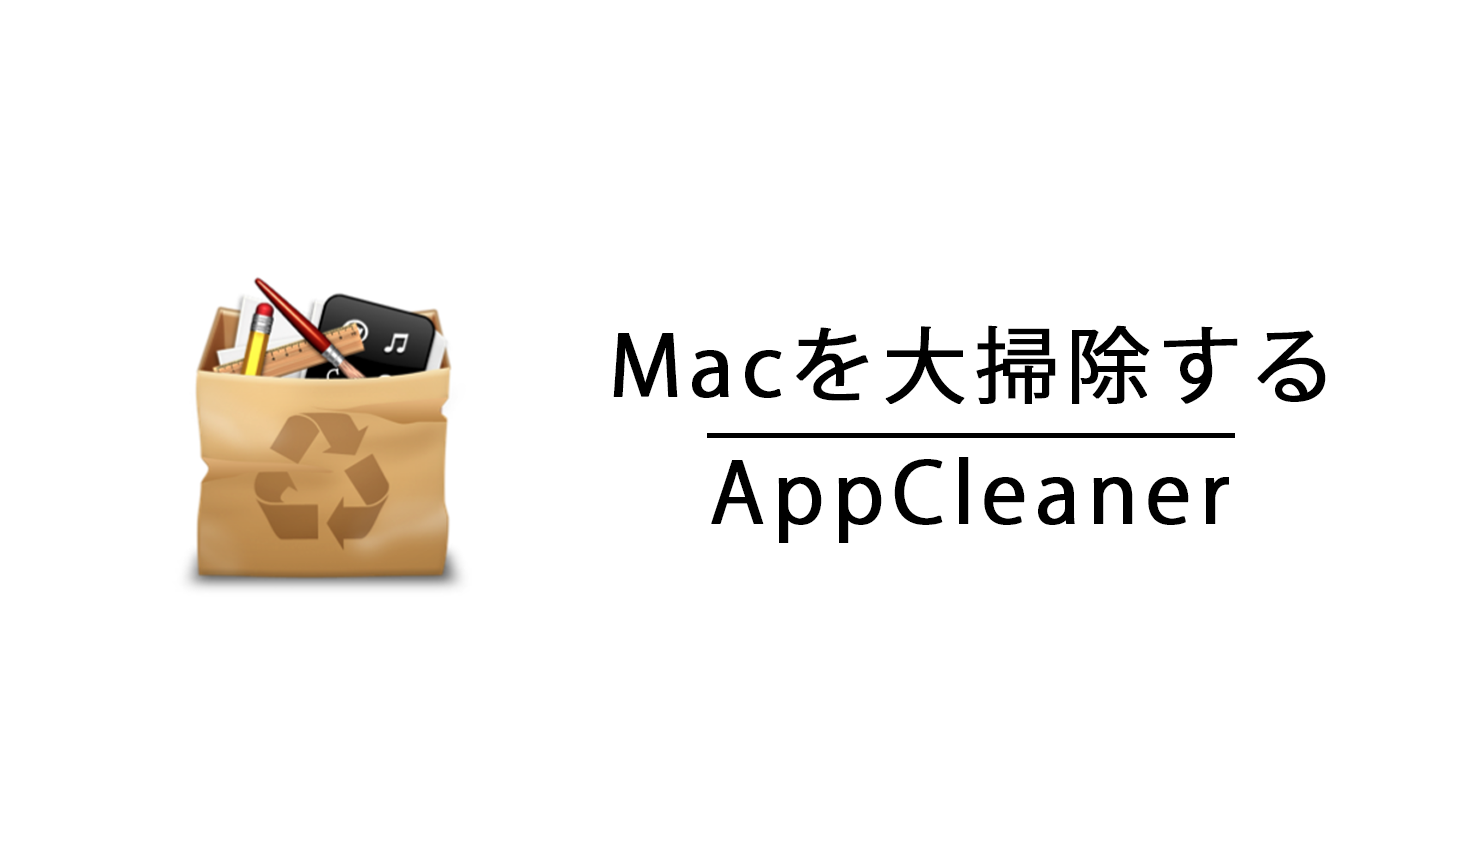 appcelaner - MacOSを大掃除するソフト「AppCleaner」